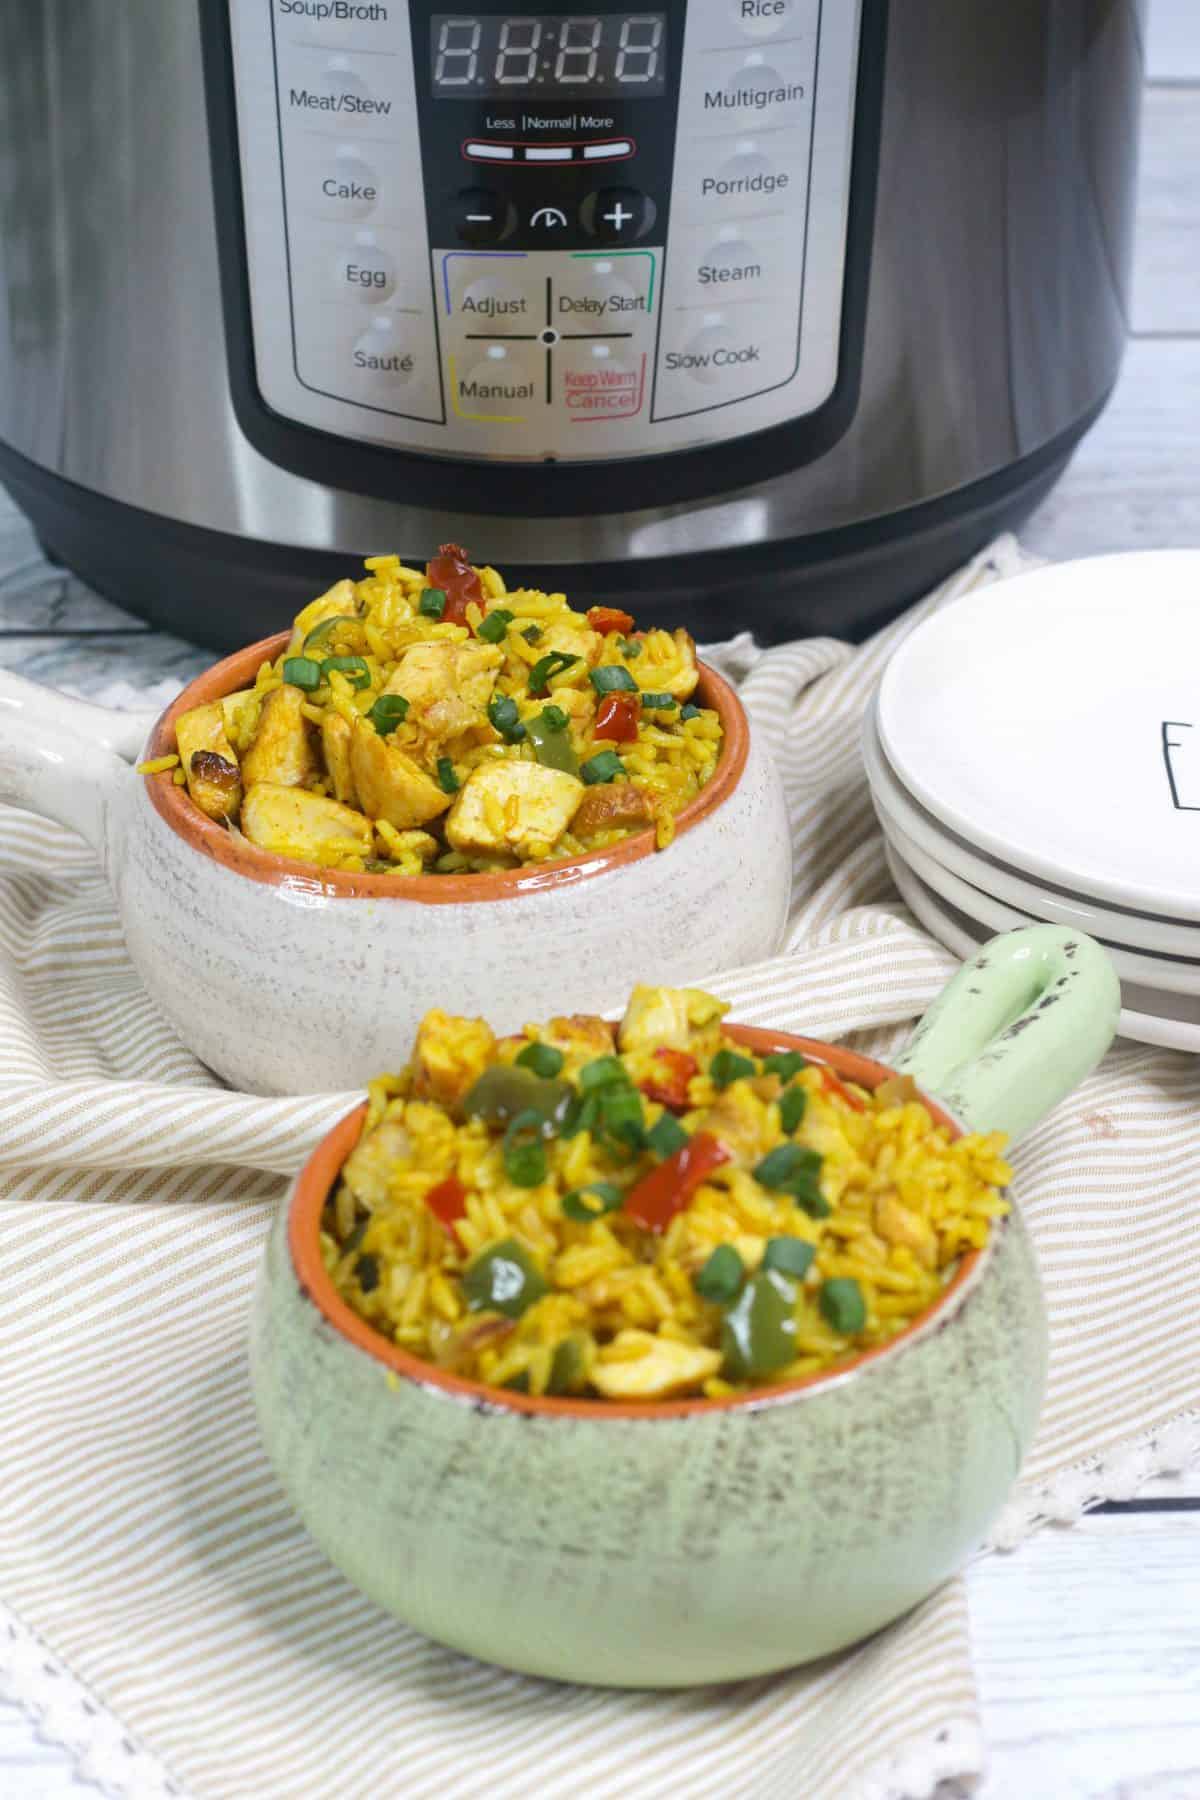 arroz con pollo, instant pot chicken and rice recipe